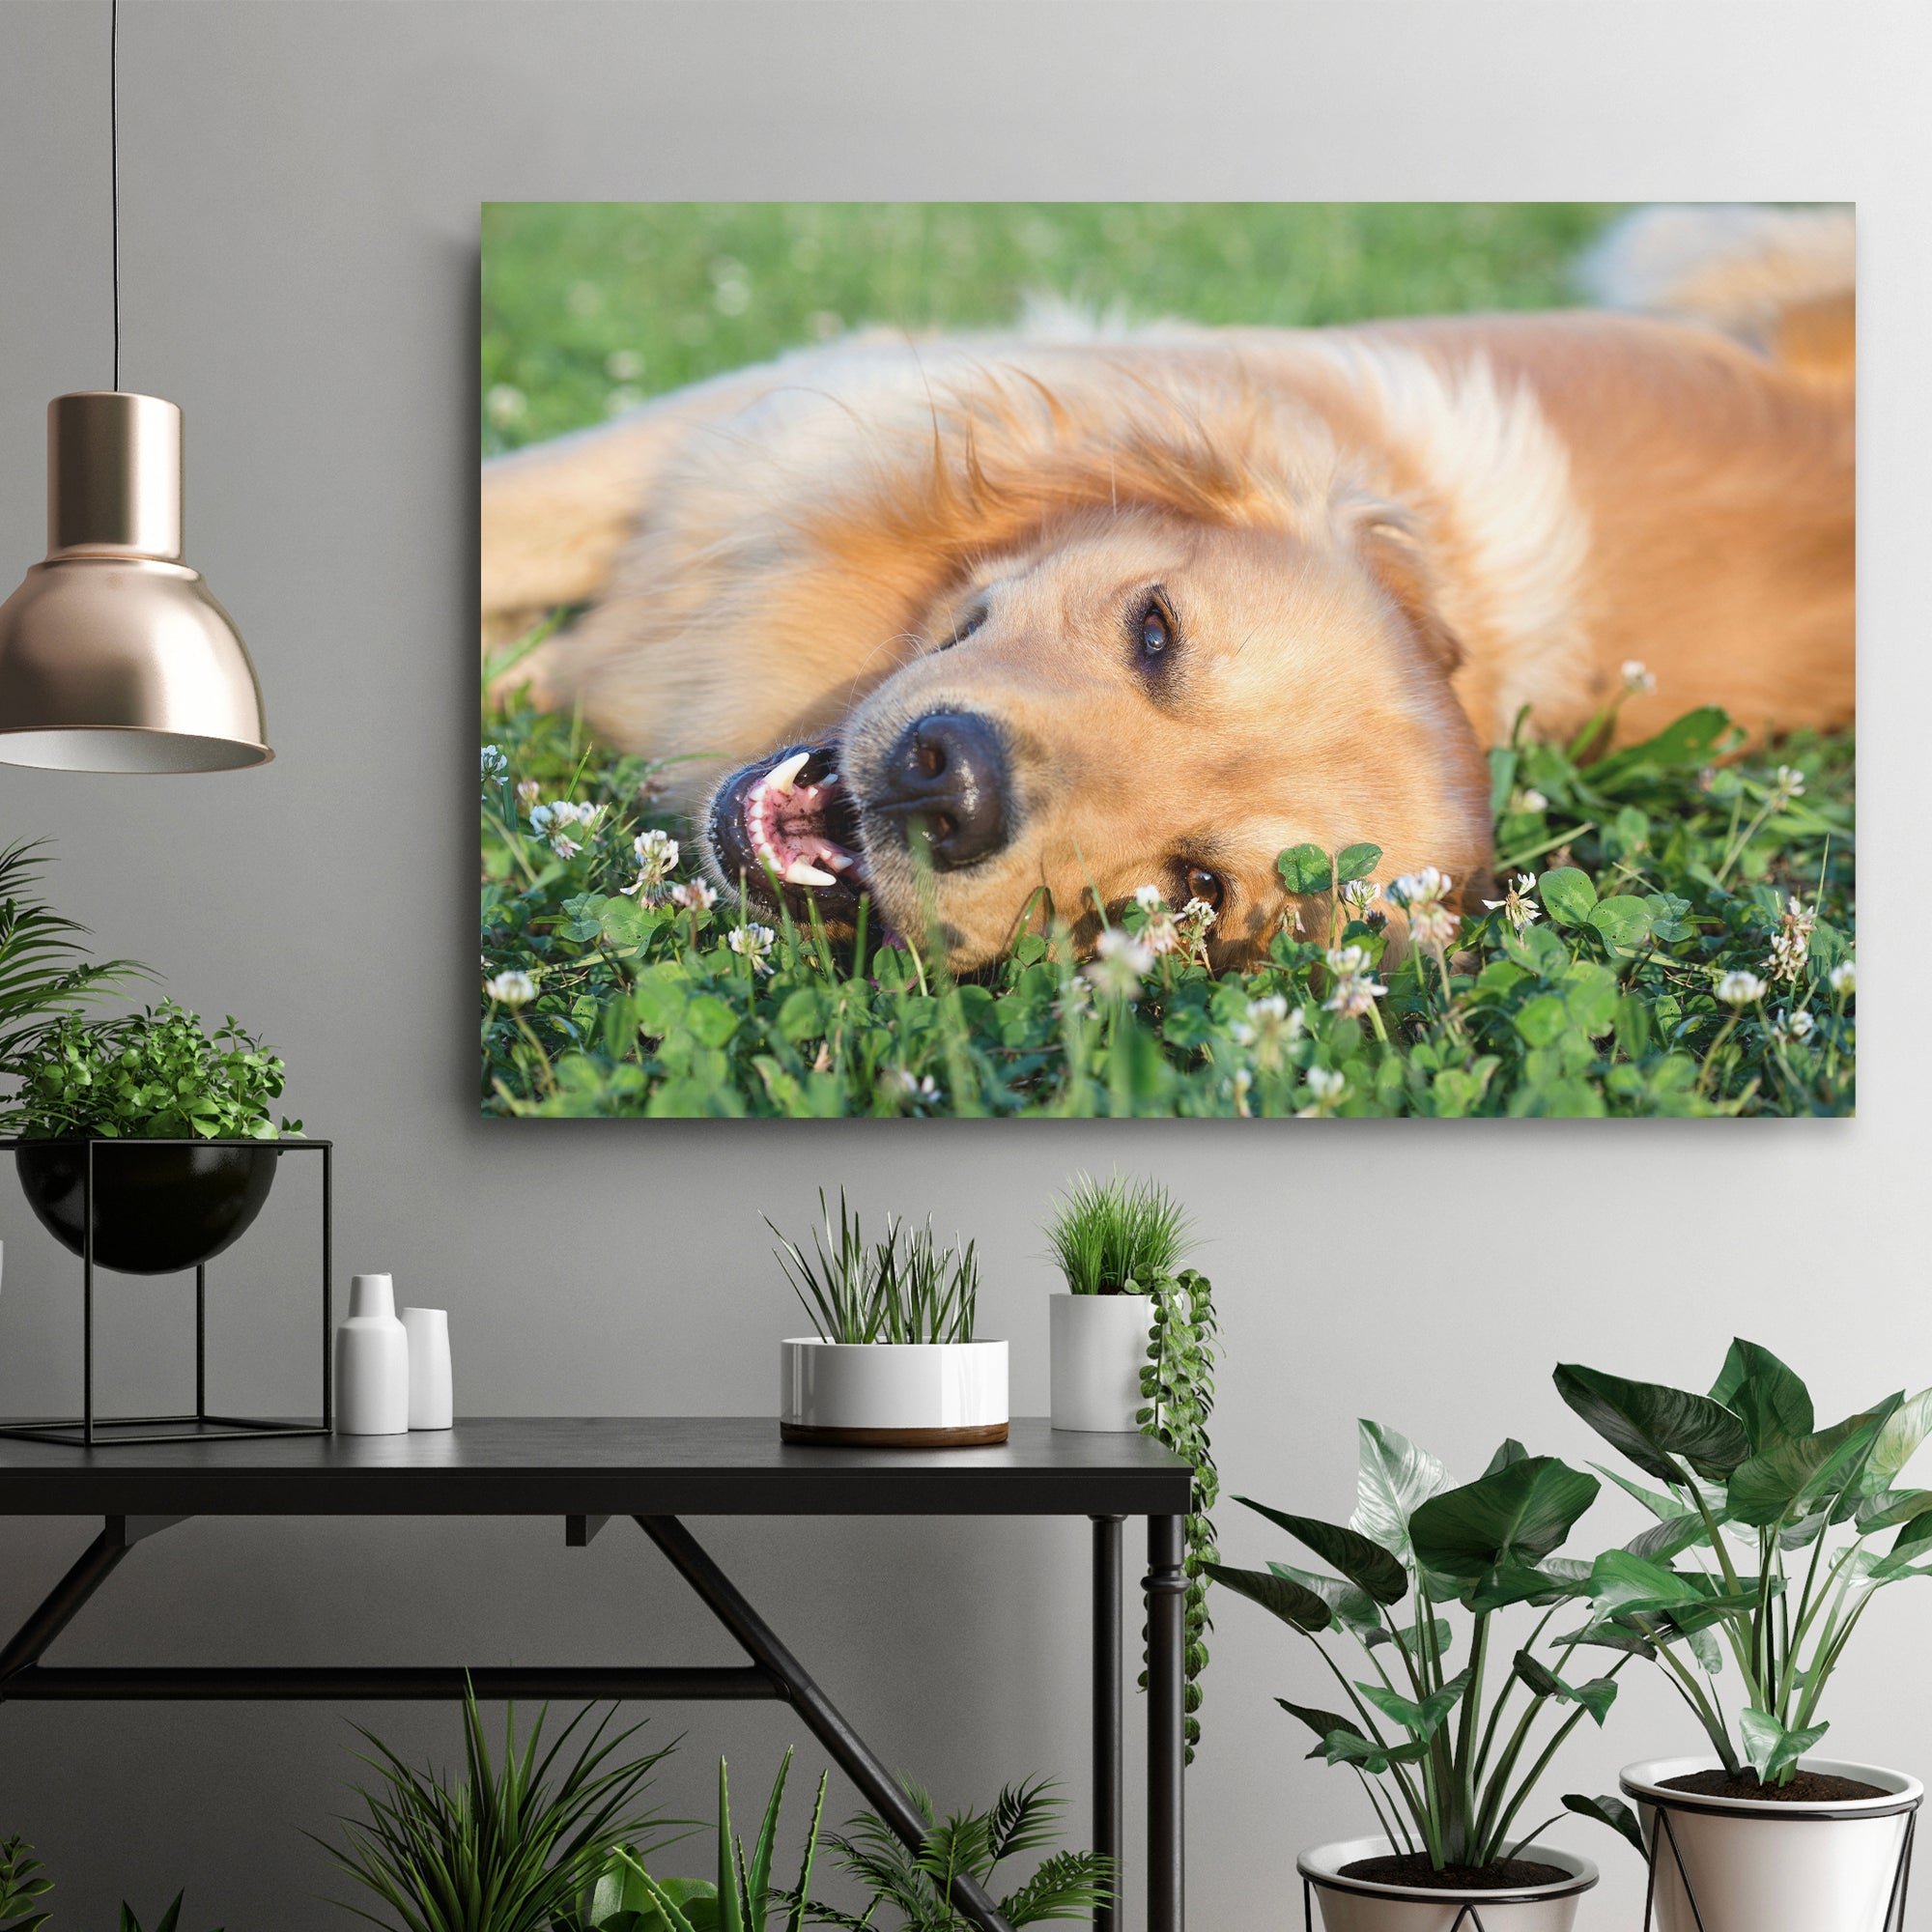 Personalized Pet Memories "Best Friend Moment Capture" Canvas Print